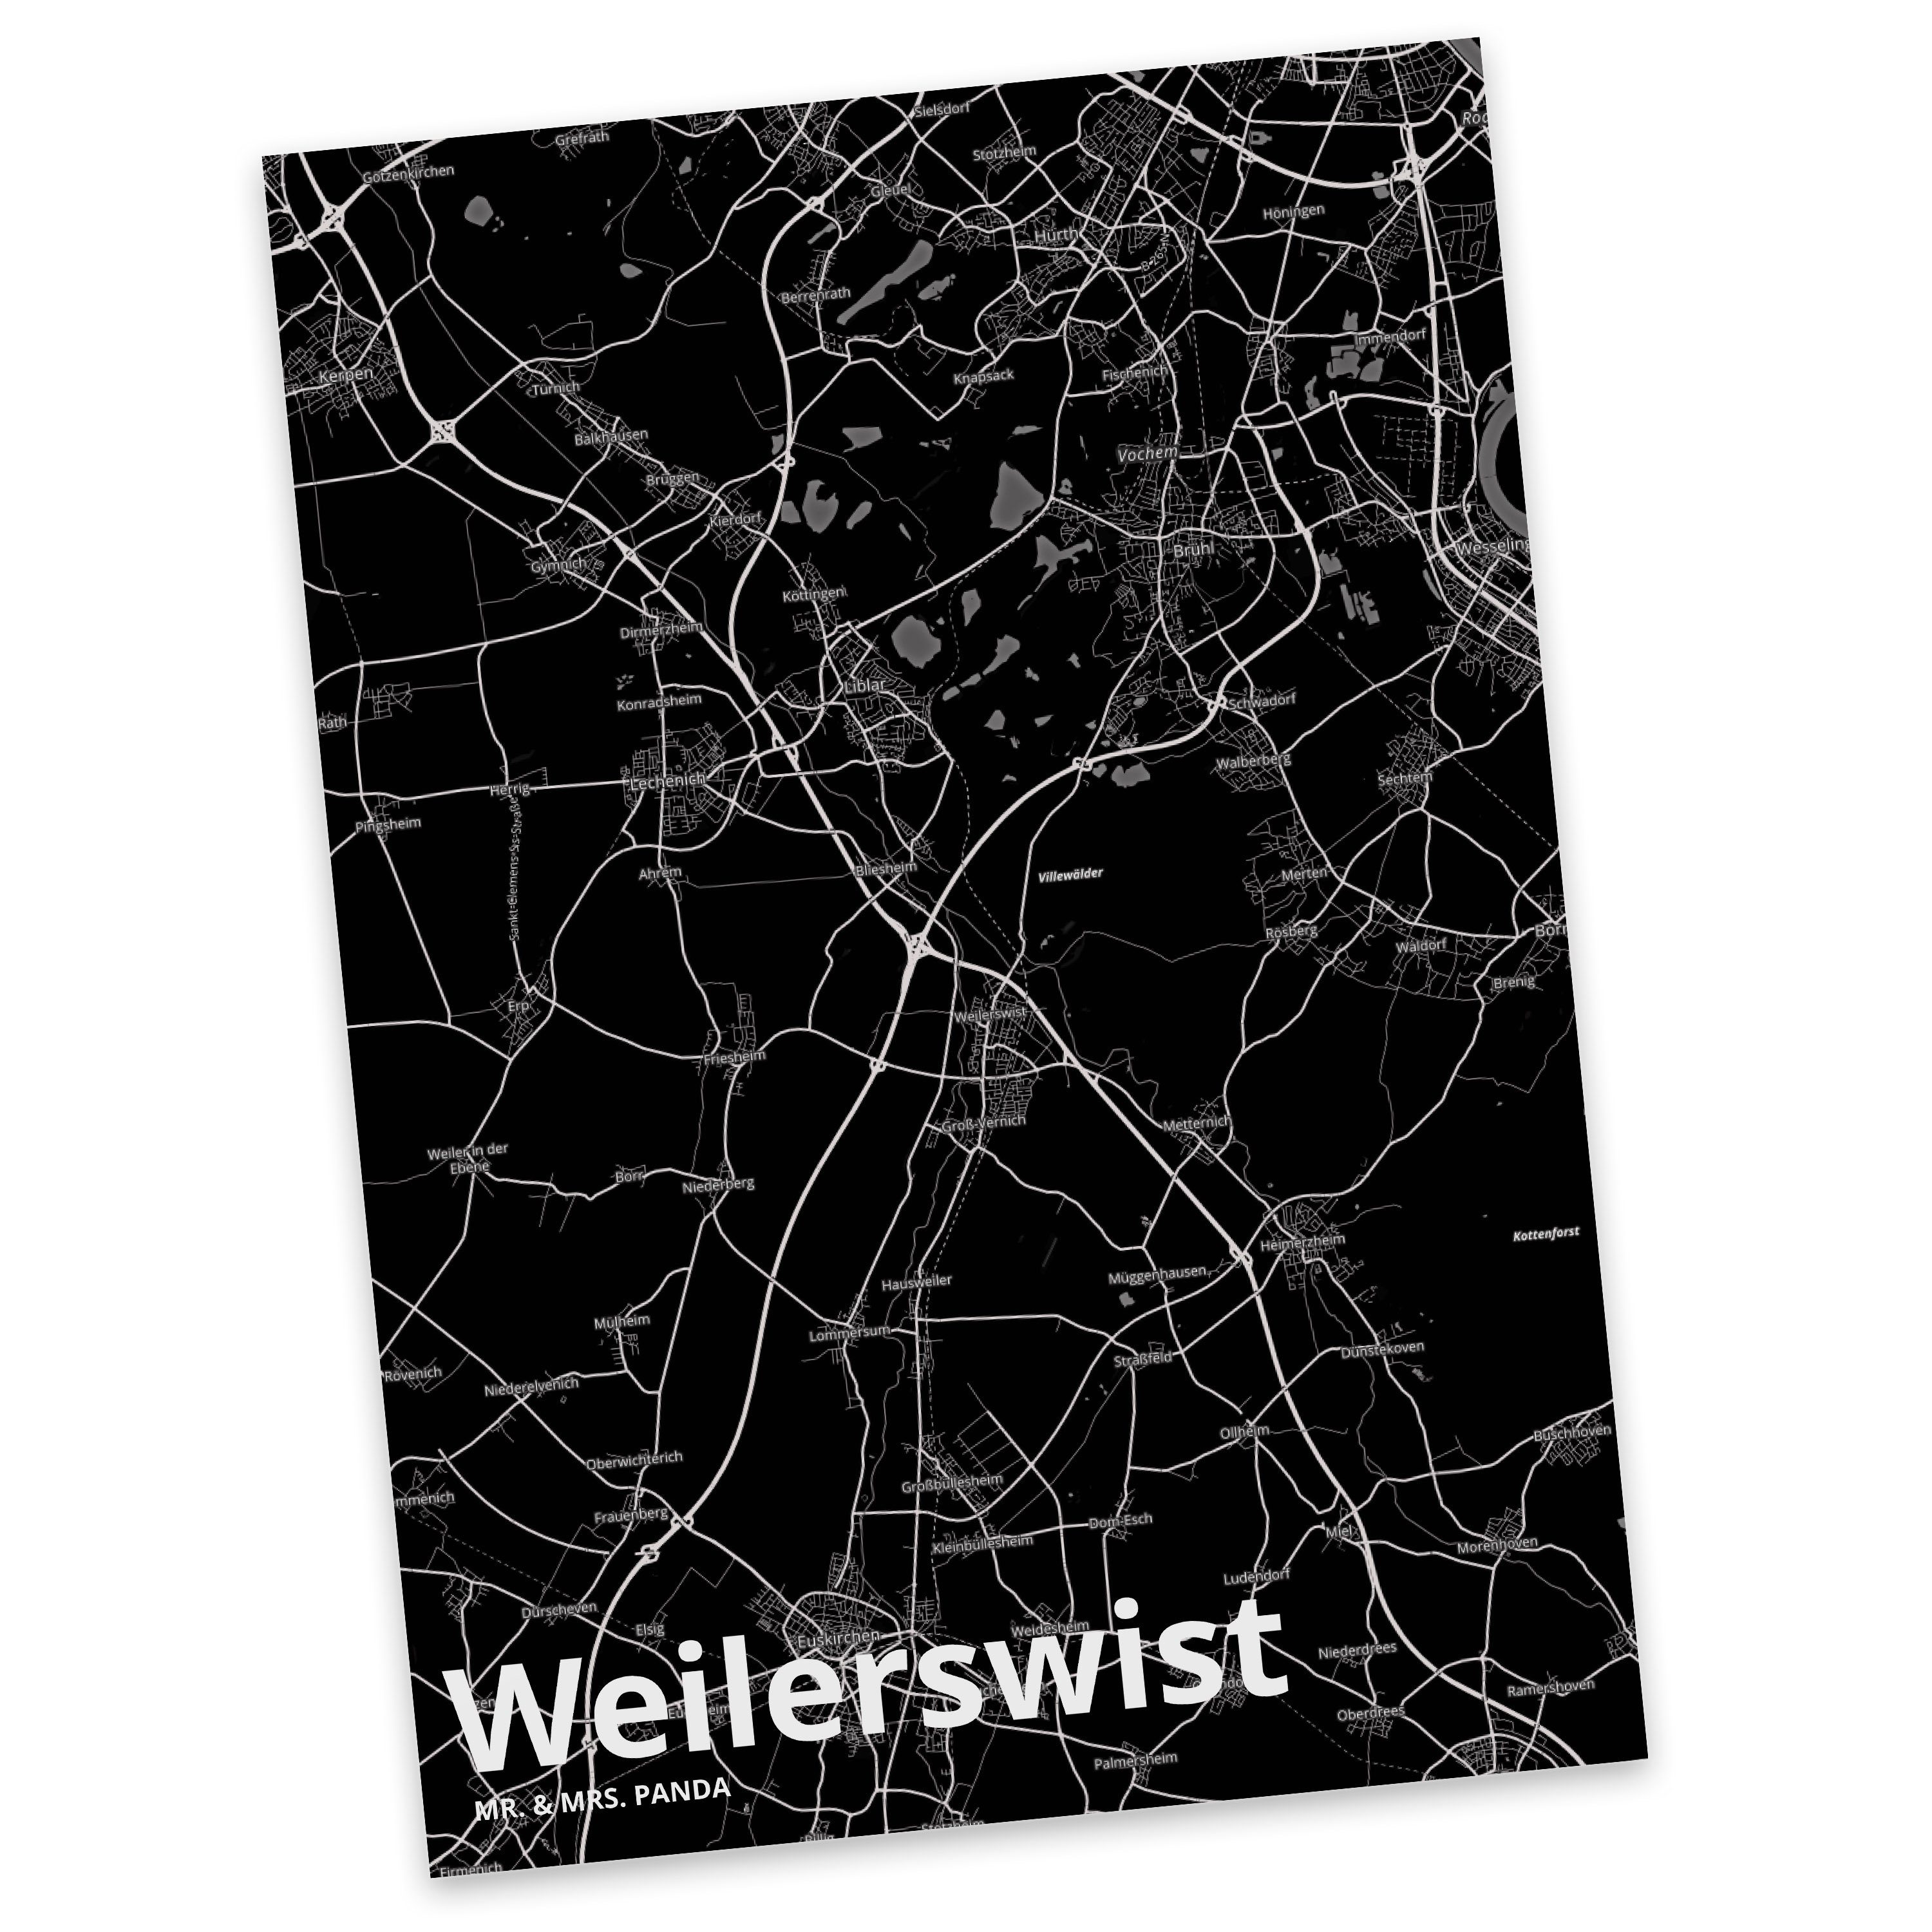 Mr. & Mrs. Panda Postkarte Weilerswist - Geschenk, Ansichtskarte, Einladung, Dorf, Ort, Stadt Do